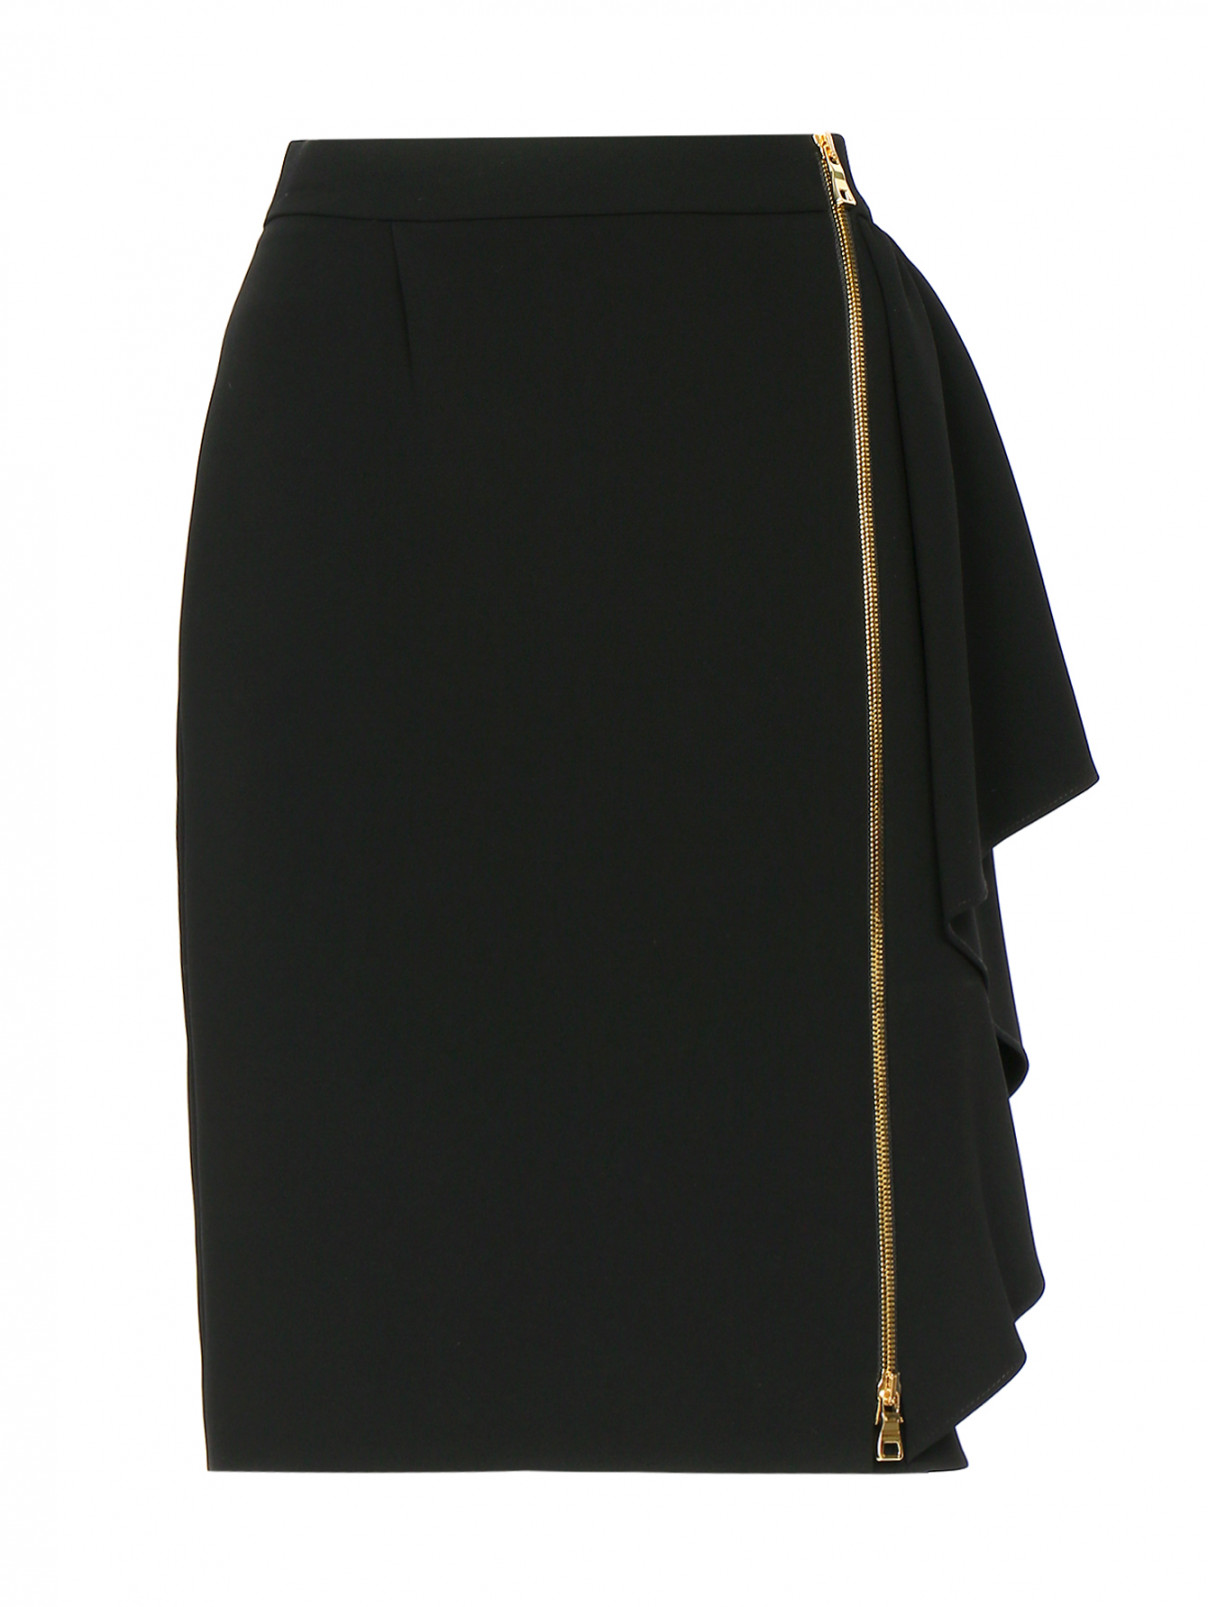 Юбка-мини с драпировкой Moschino Boutique  –  Общий вид  – Цвет:  Черный